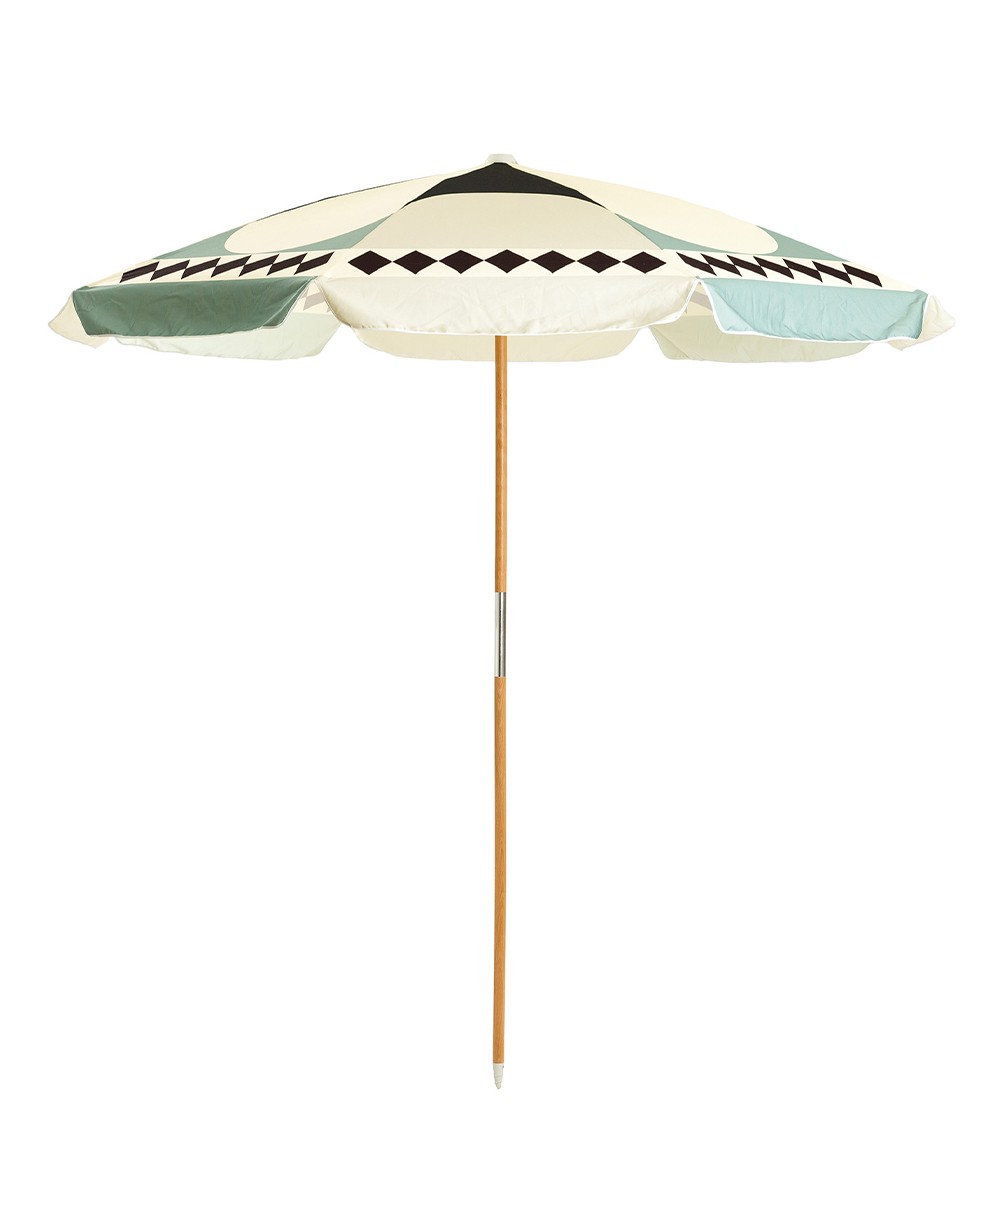 Der Sonnenschirm Amalfi Beach Umbrella  im Diamond Design aus der 2023 Sommer Kollektion von Business&Pleasure im RAUM concept store.